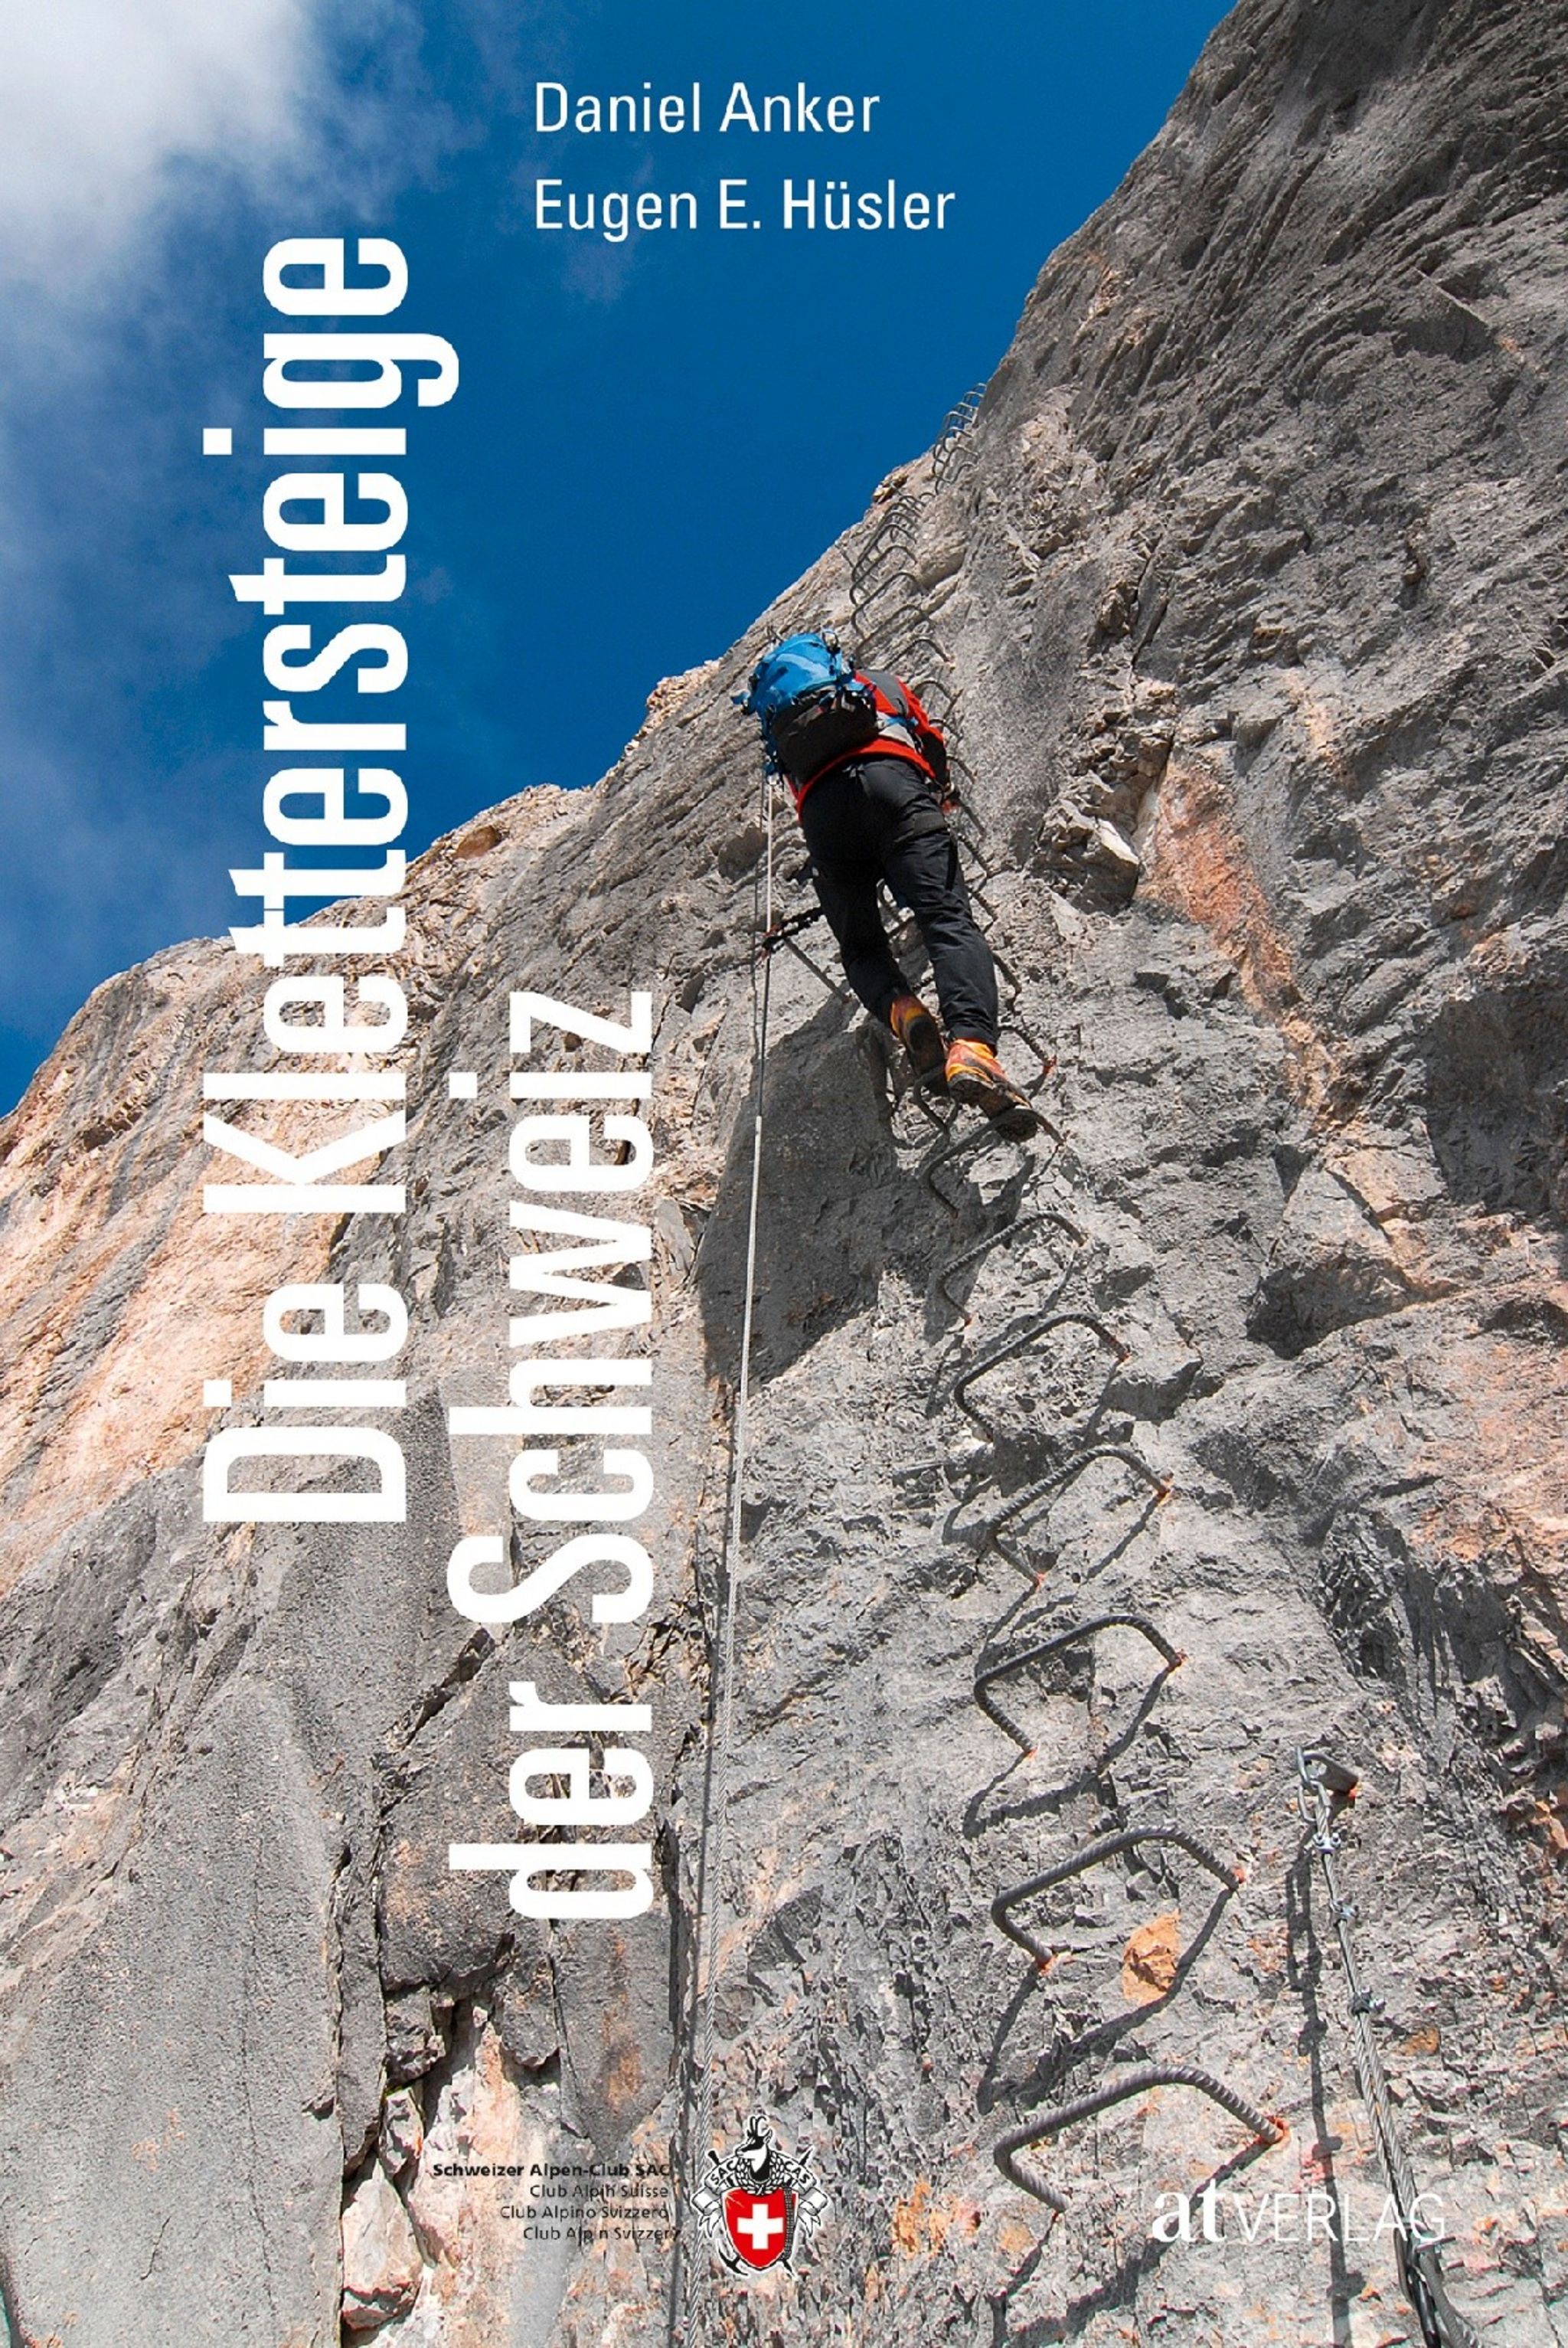 Online bestellen: Klimgids - Klettersteiggids Die Klettersteige der Schweiz | AT Verlag